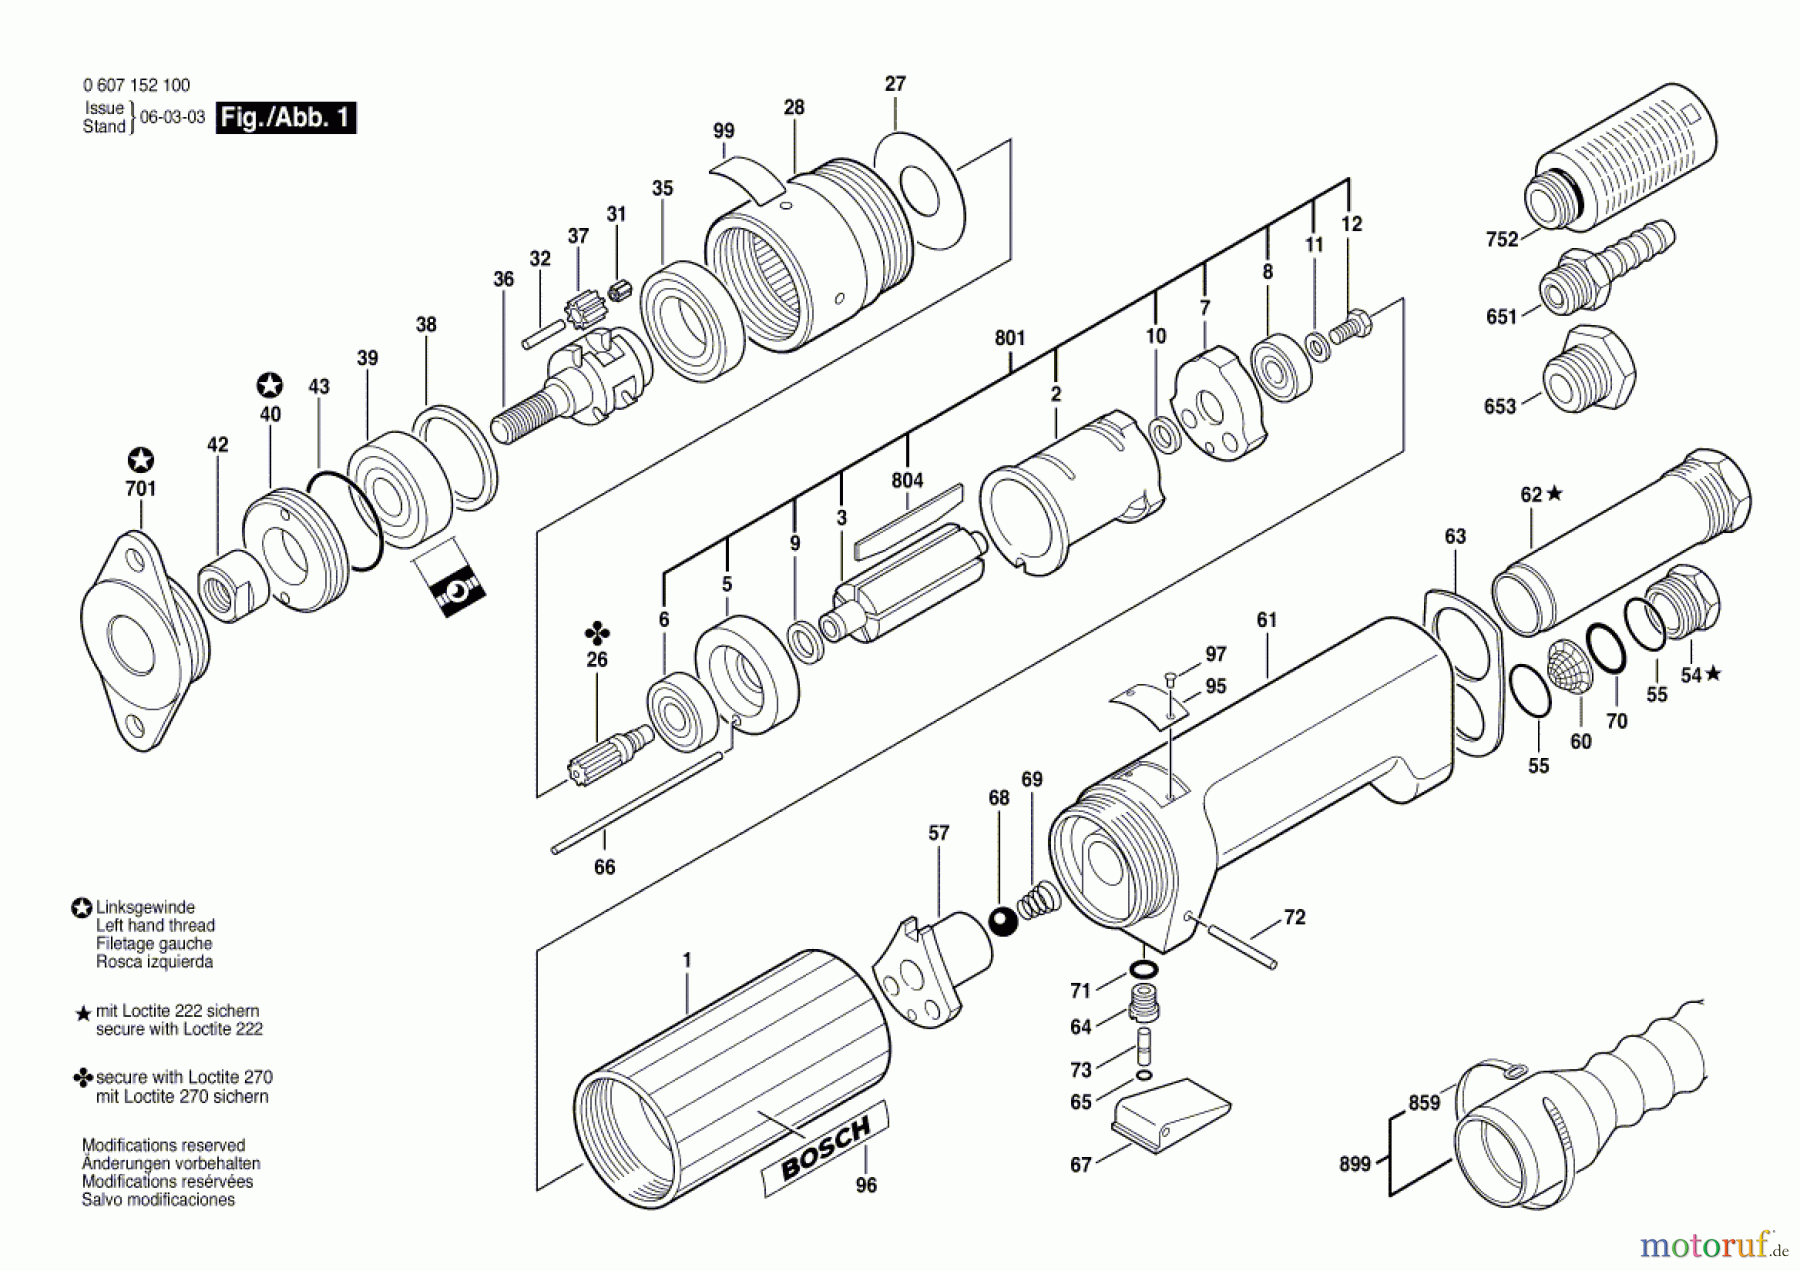  Bosch Werkzeug Pw-Bohrmaschine-Ind 550 WATT-SERIE Seite 1